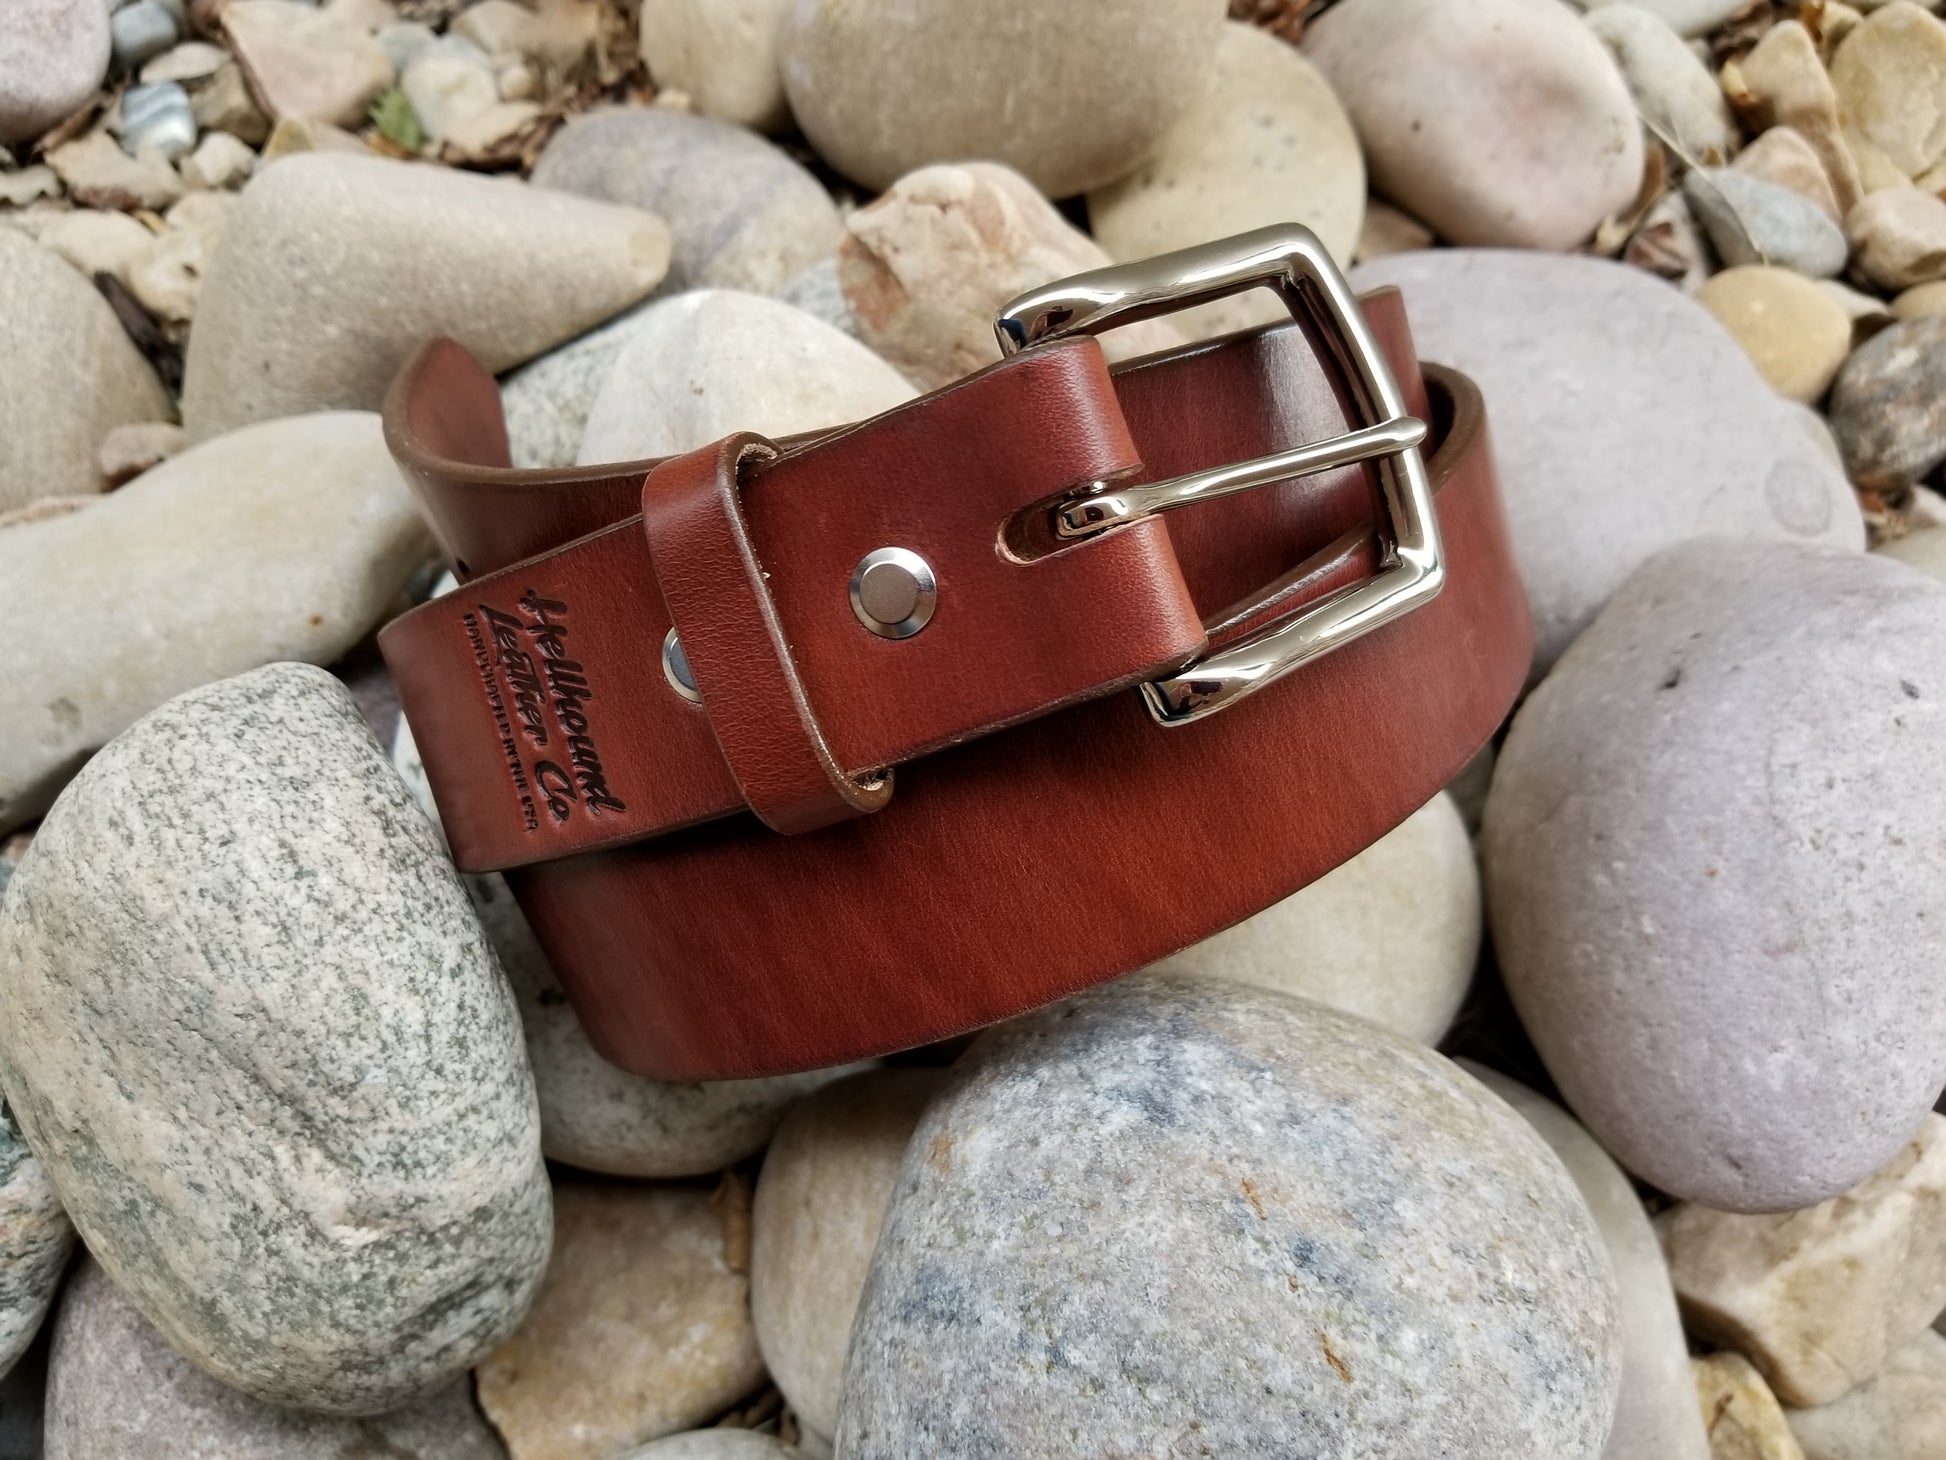 Leather Belt-Standard Natural vegetable-tanned leather belt, 1 1/2 width